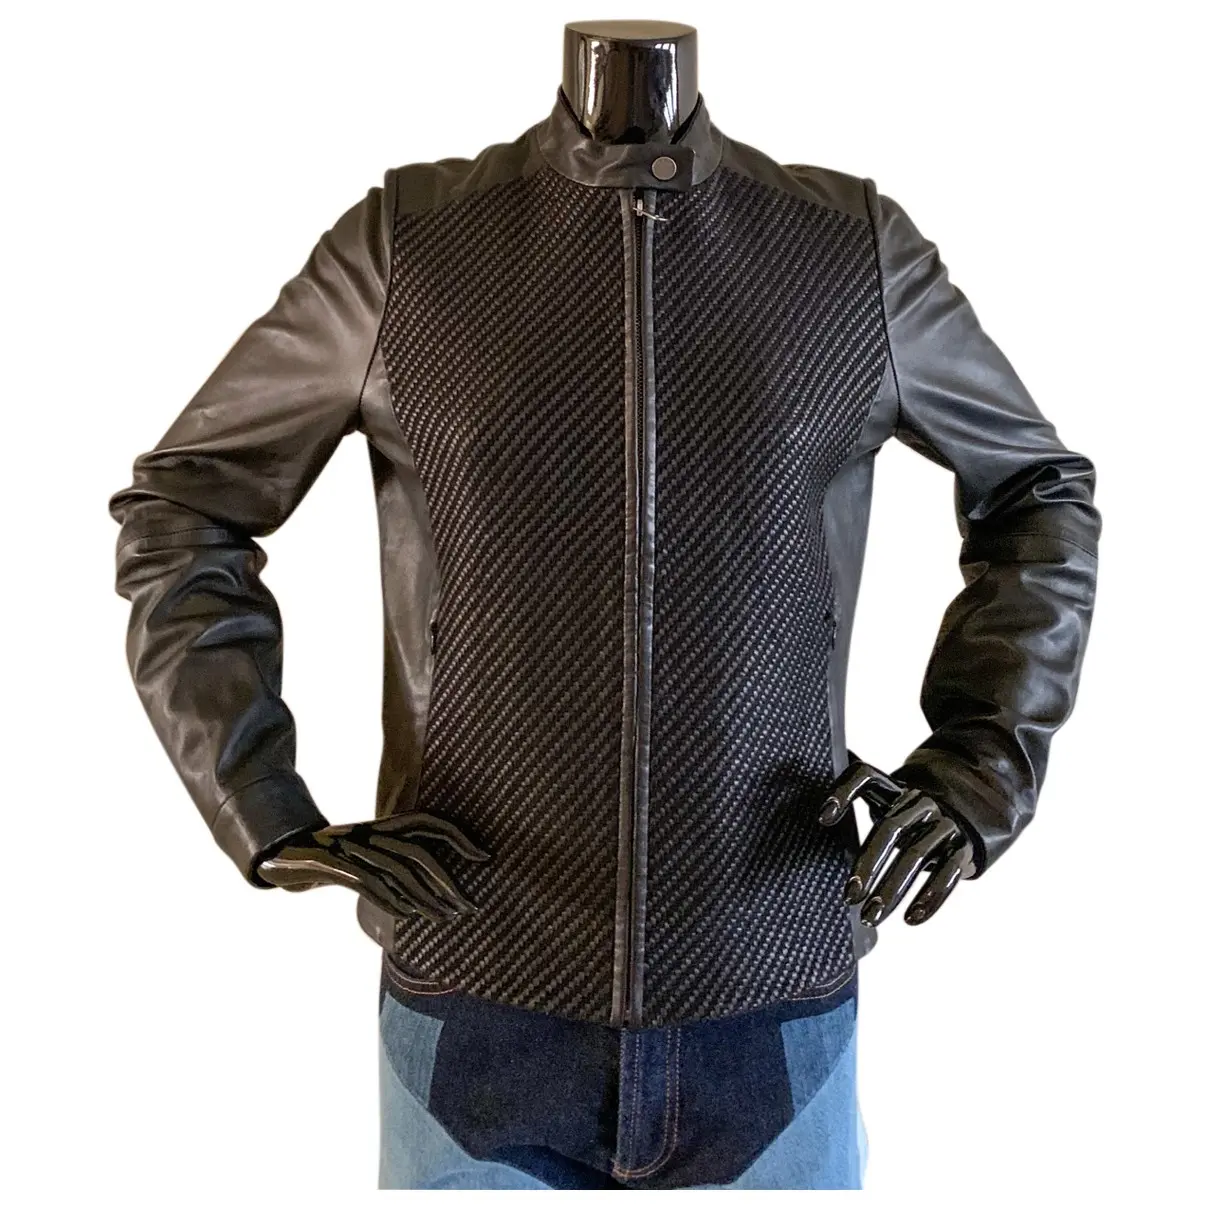 Leather jacket Max Mara Weekend